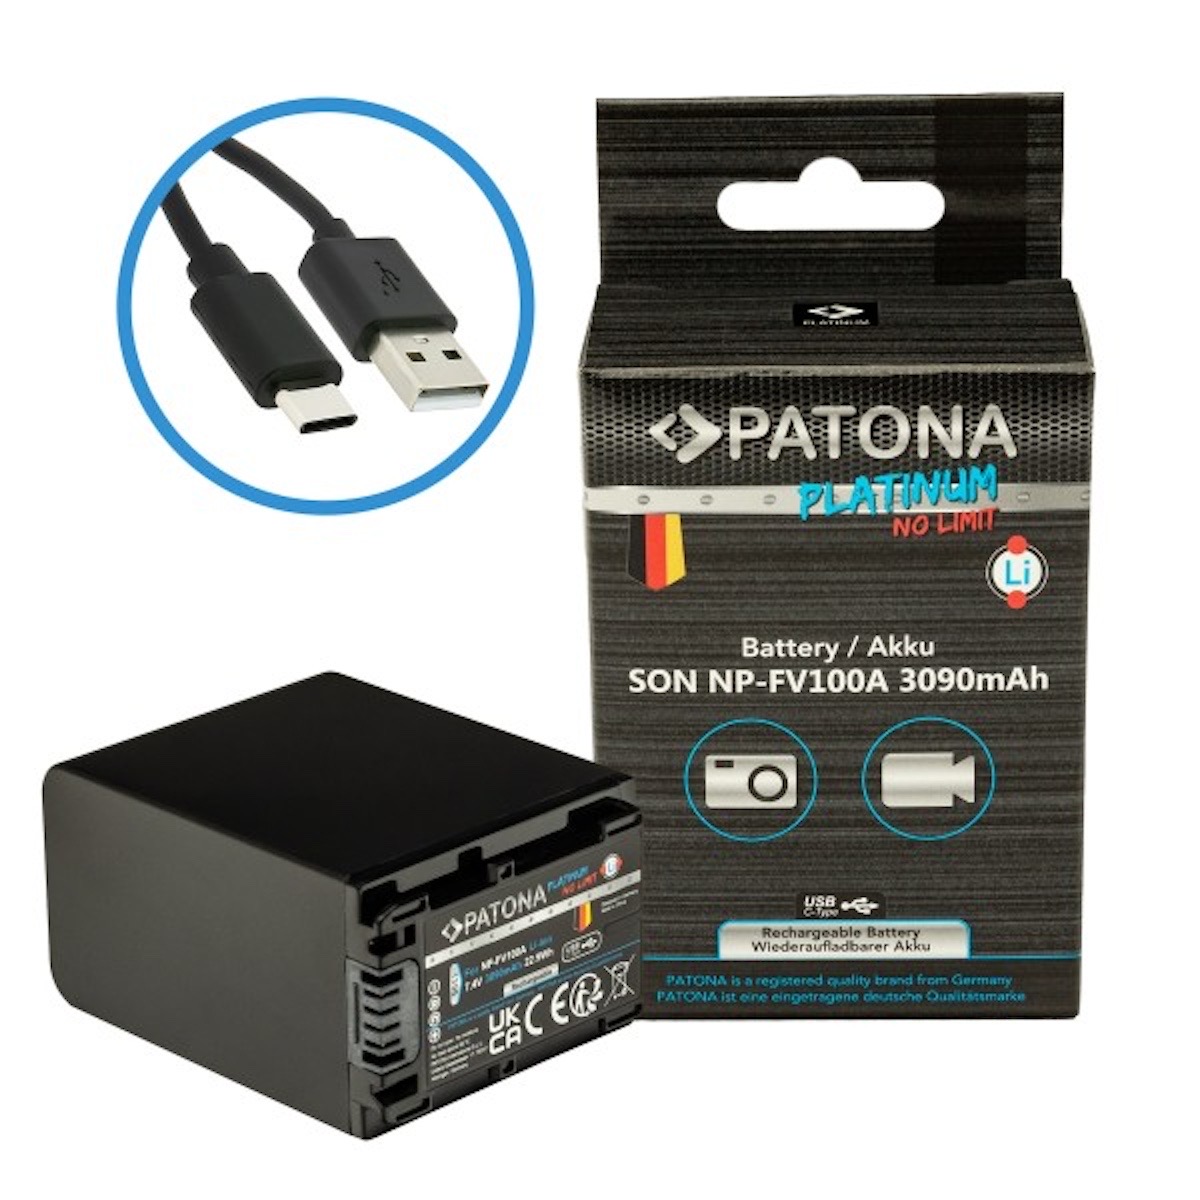 Patona Platinum Akku mit USB-C Input f. Sony NP-FV100